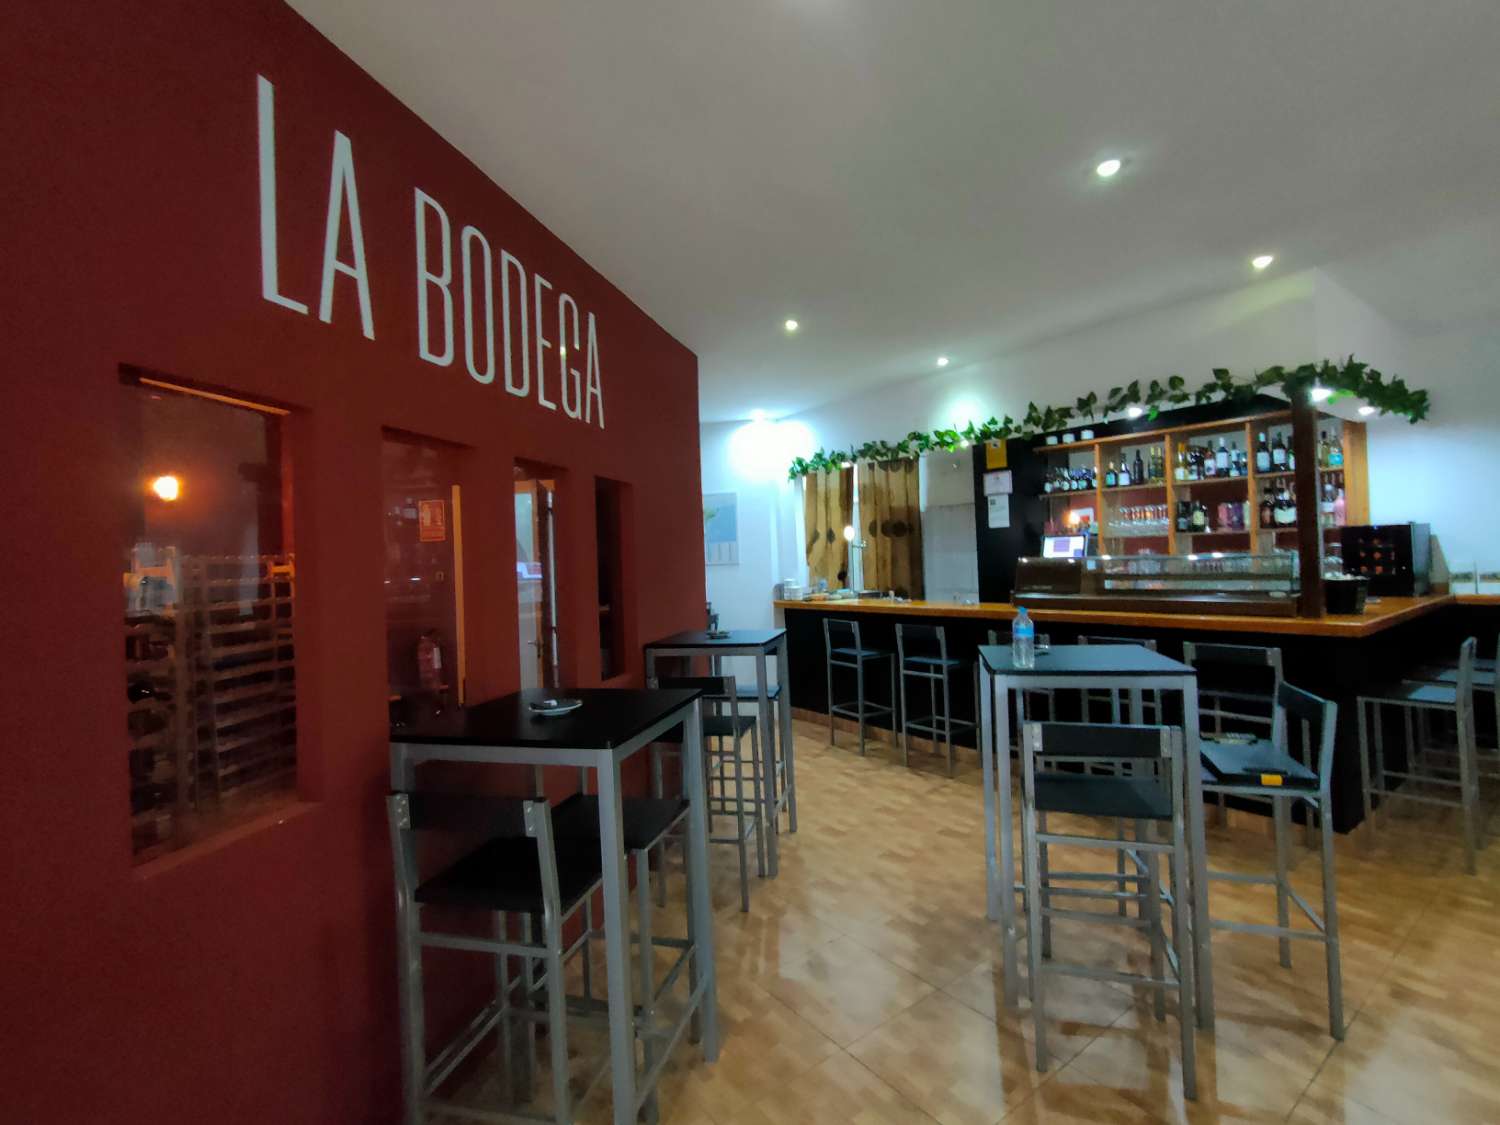 Traspaso Bar Vinoteca en Benalmádena - Gran terraza 20 mesas & Bodega Vinos